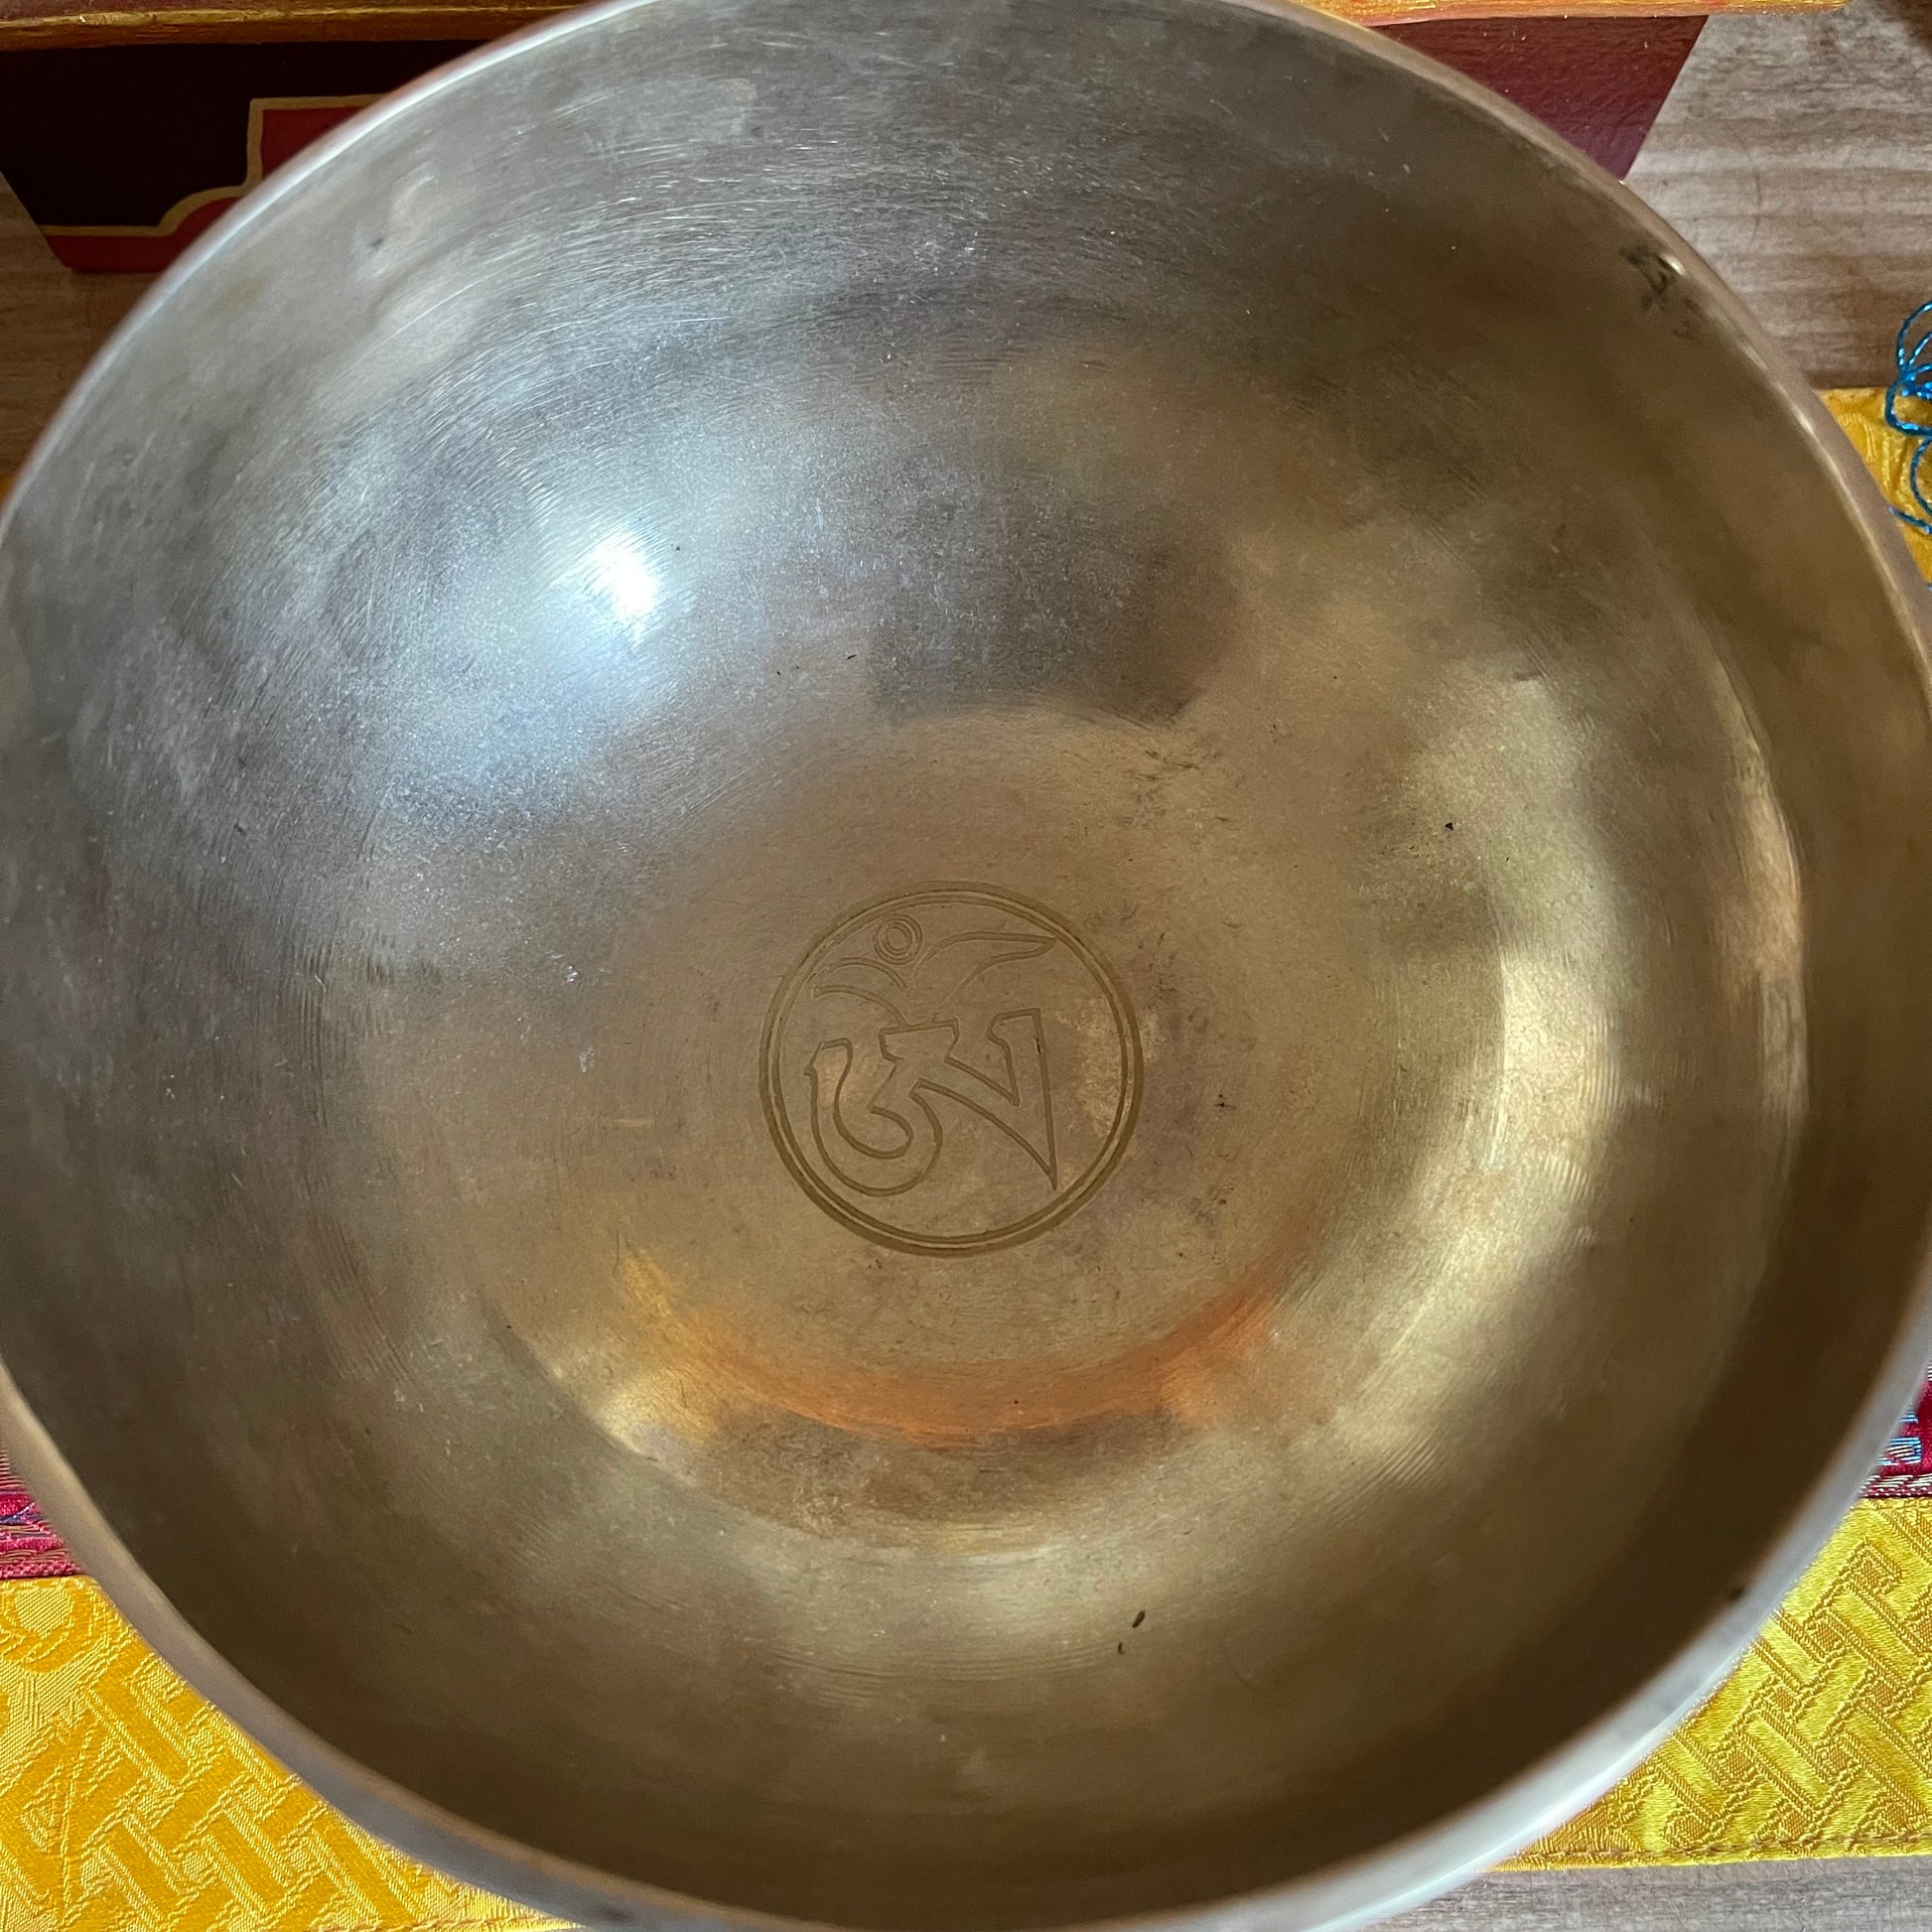 Singing Bowl Om (engraving) 16.5 cm (755gm)